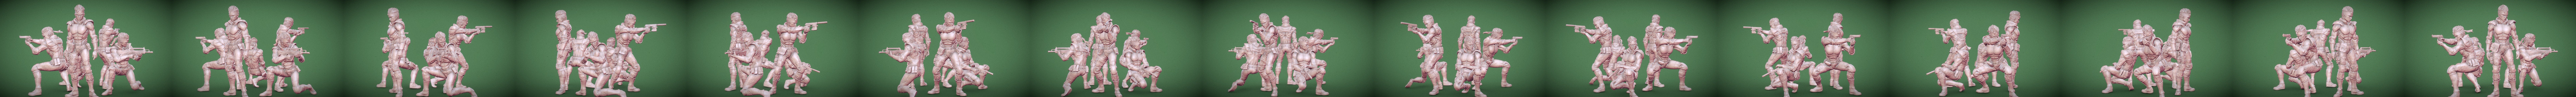 STL file Solid Snake Metal Gear Solid 1 version fan art 3D print